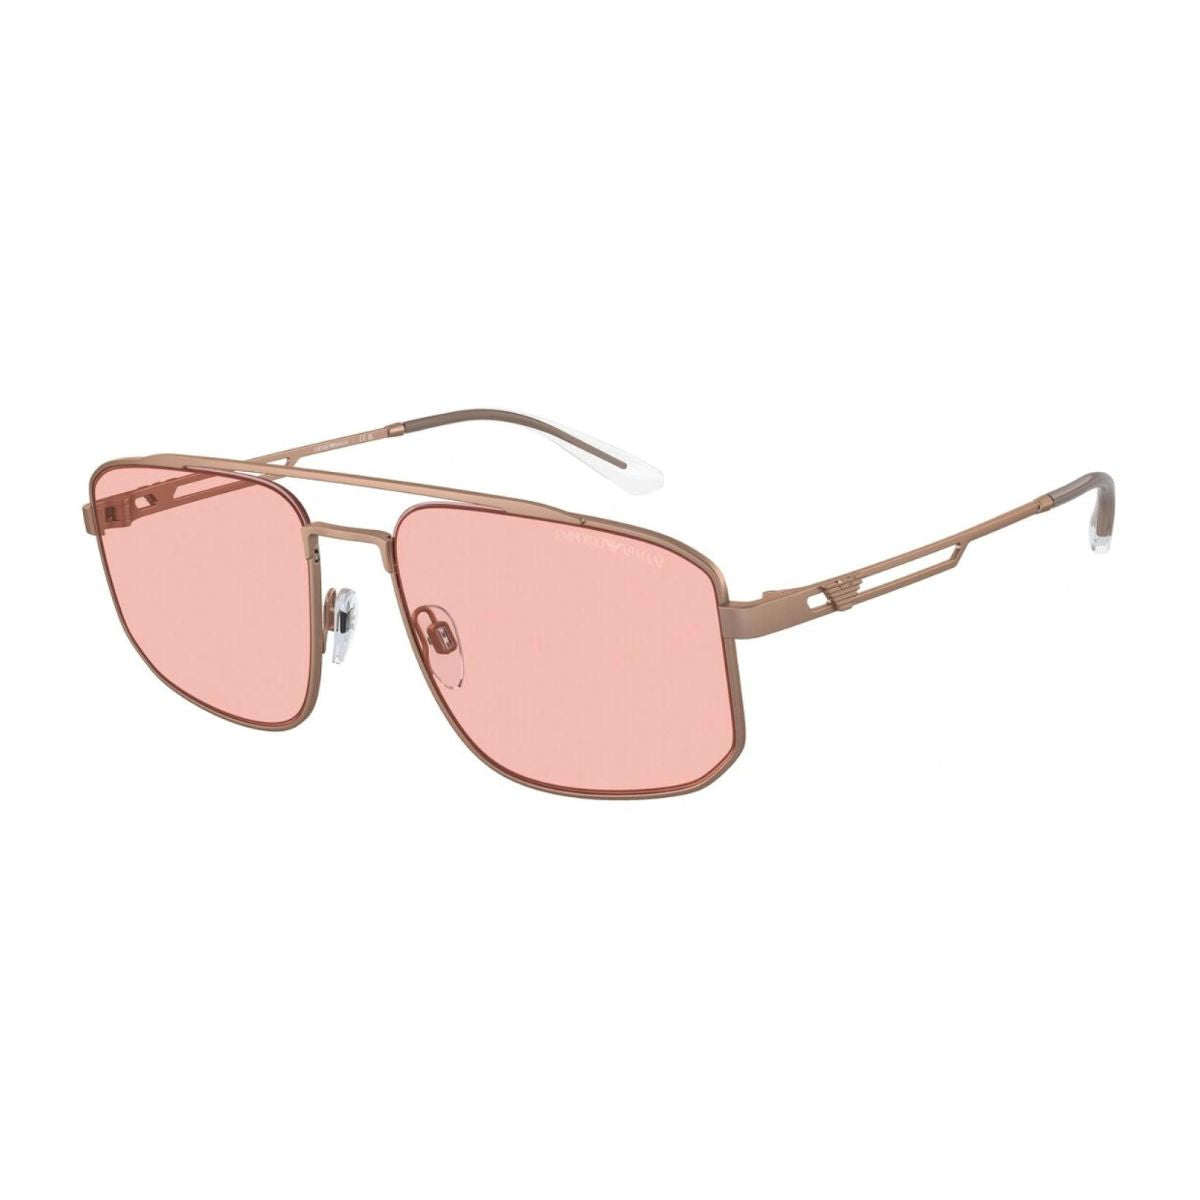 "Buy Emporio Armani EA 2139 3004/5 UV Resistant Sunglasses For Men At Optorium""